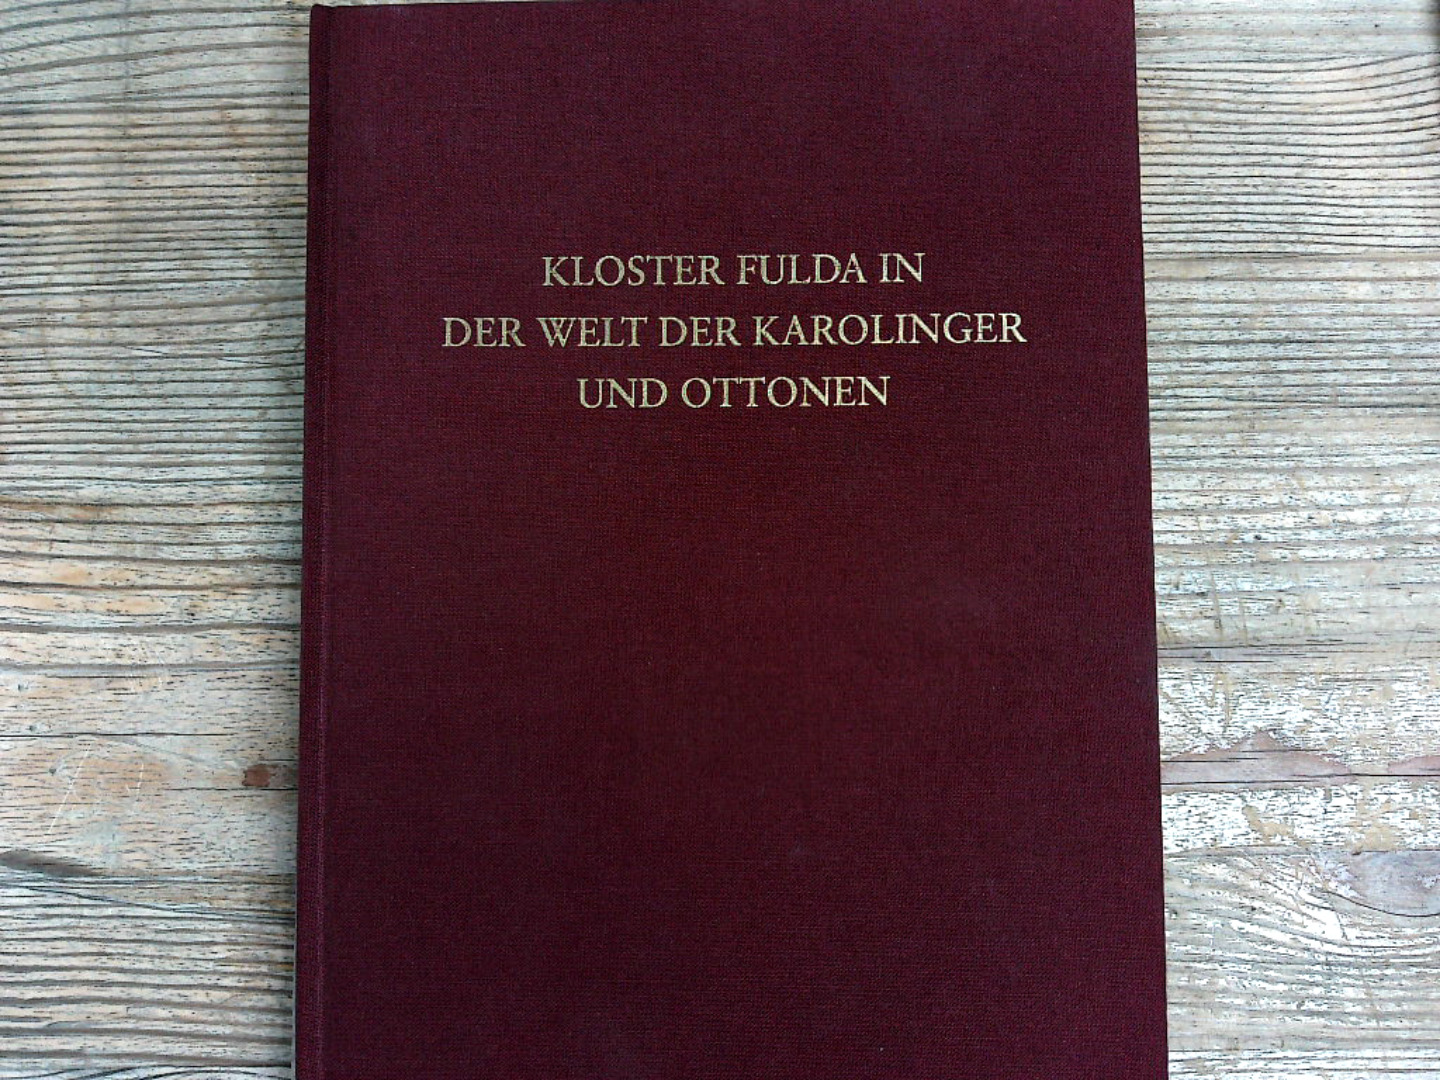 Kloster Fulda in der Welt der Karolinger und Ottonen. (Fuldaer Studien). - Schrimpf, Gangolf und Elmar Fastenrath